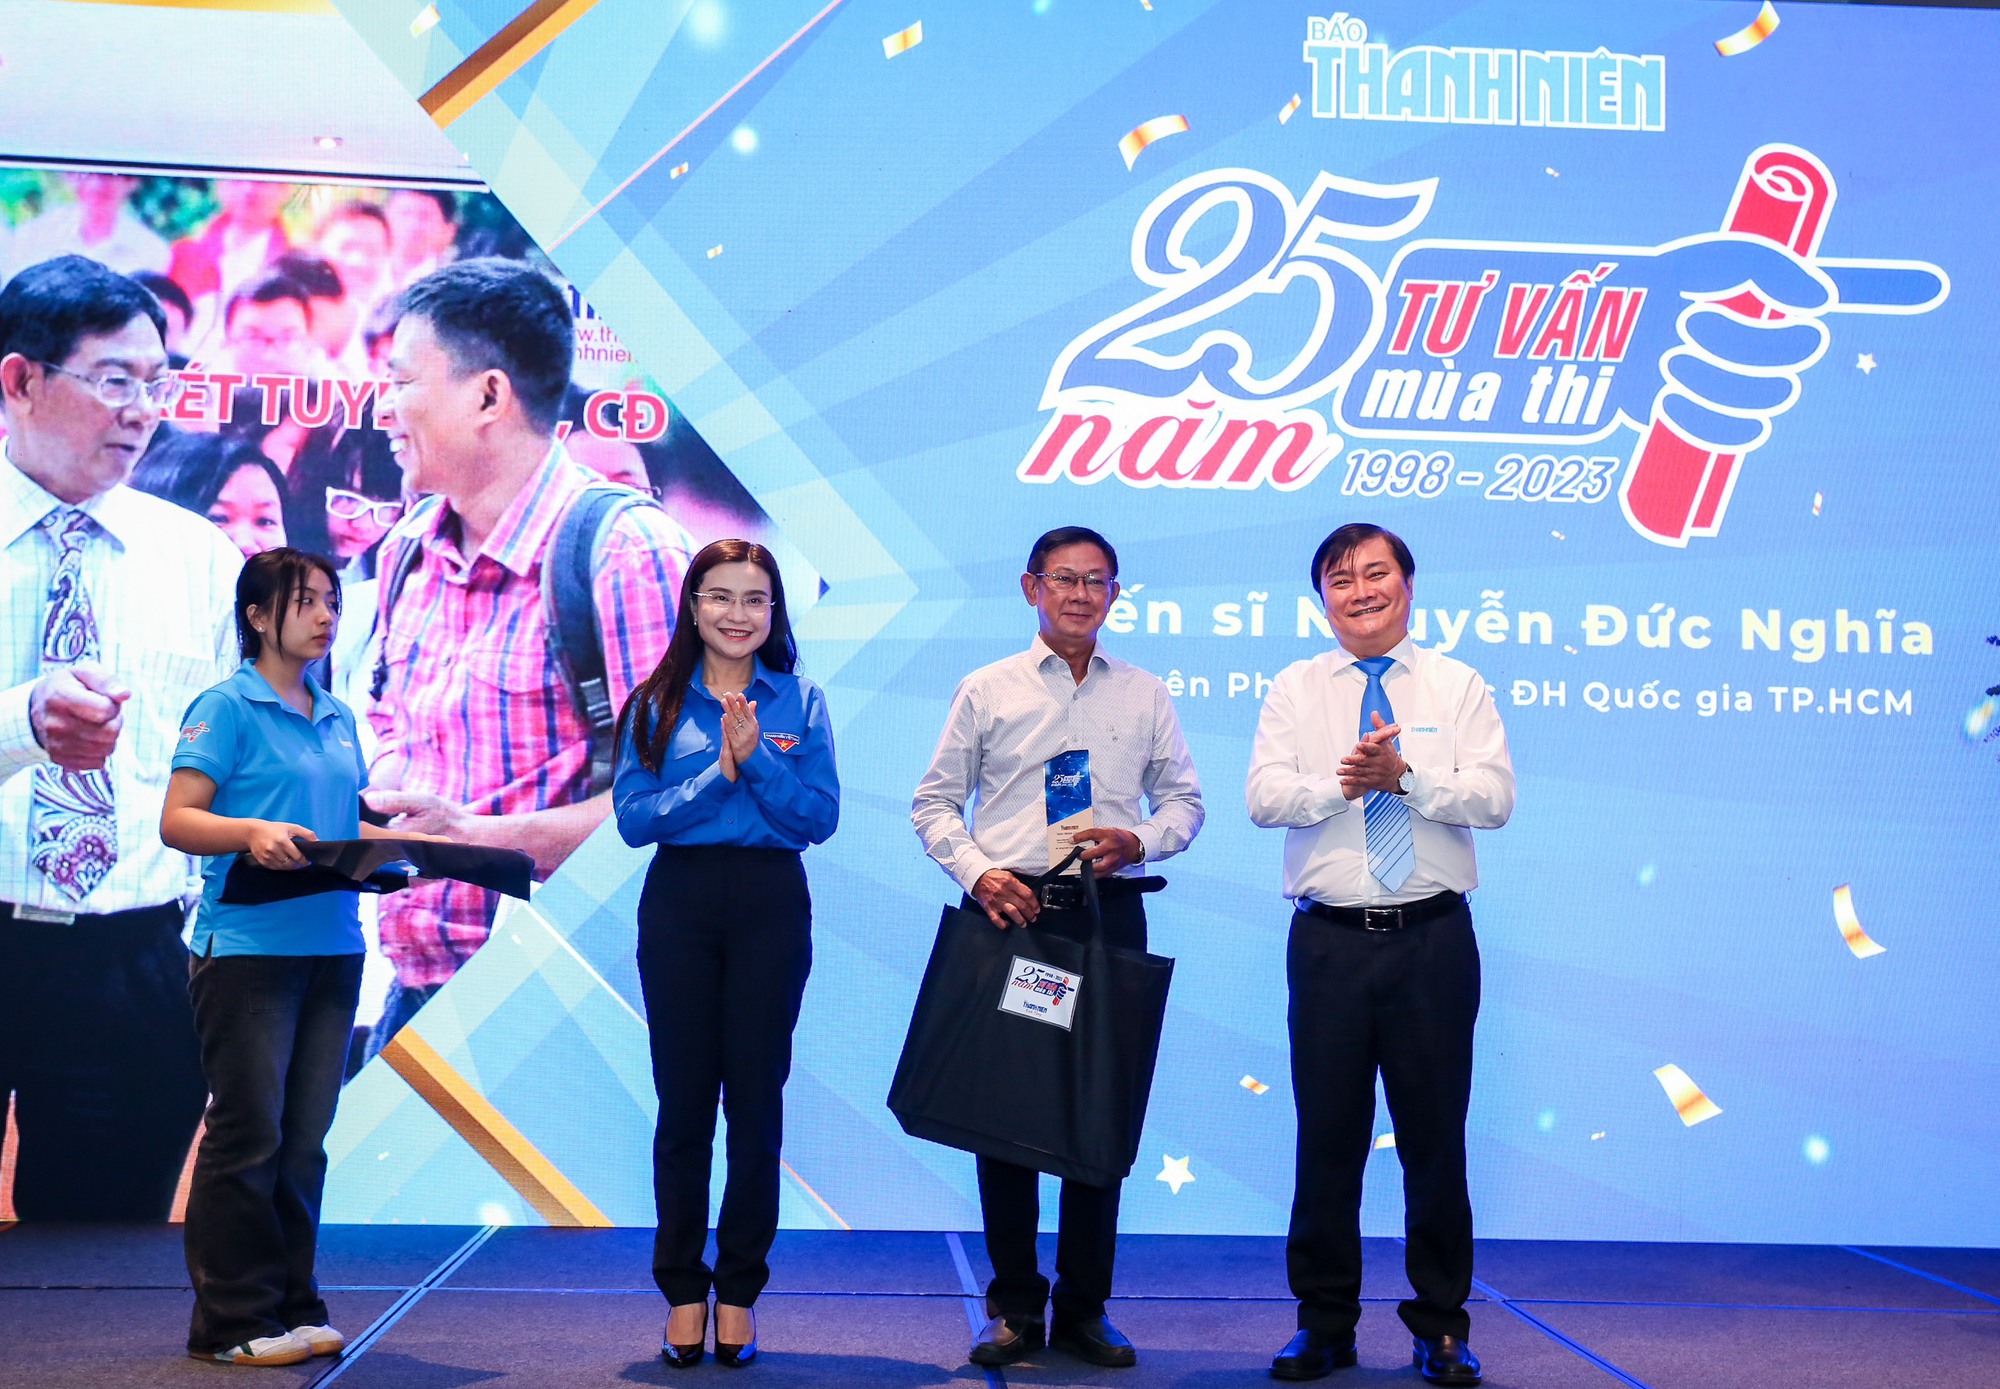 Bí thư T.Ư Đoàn Nguyễn Phạm Duy Trang chúc mừng 25 năm 'Tư vấn mùa thi' - Ảnh 4.